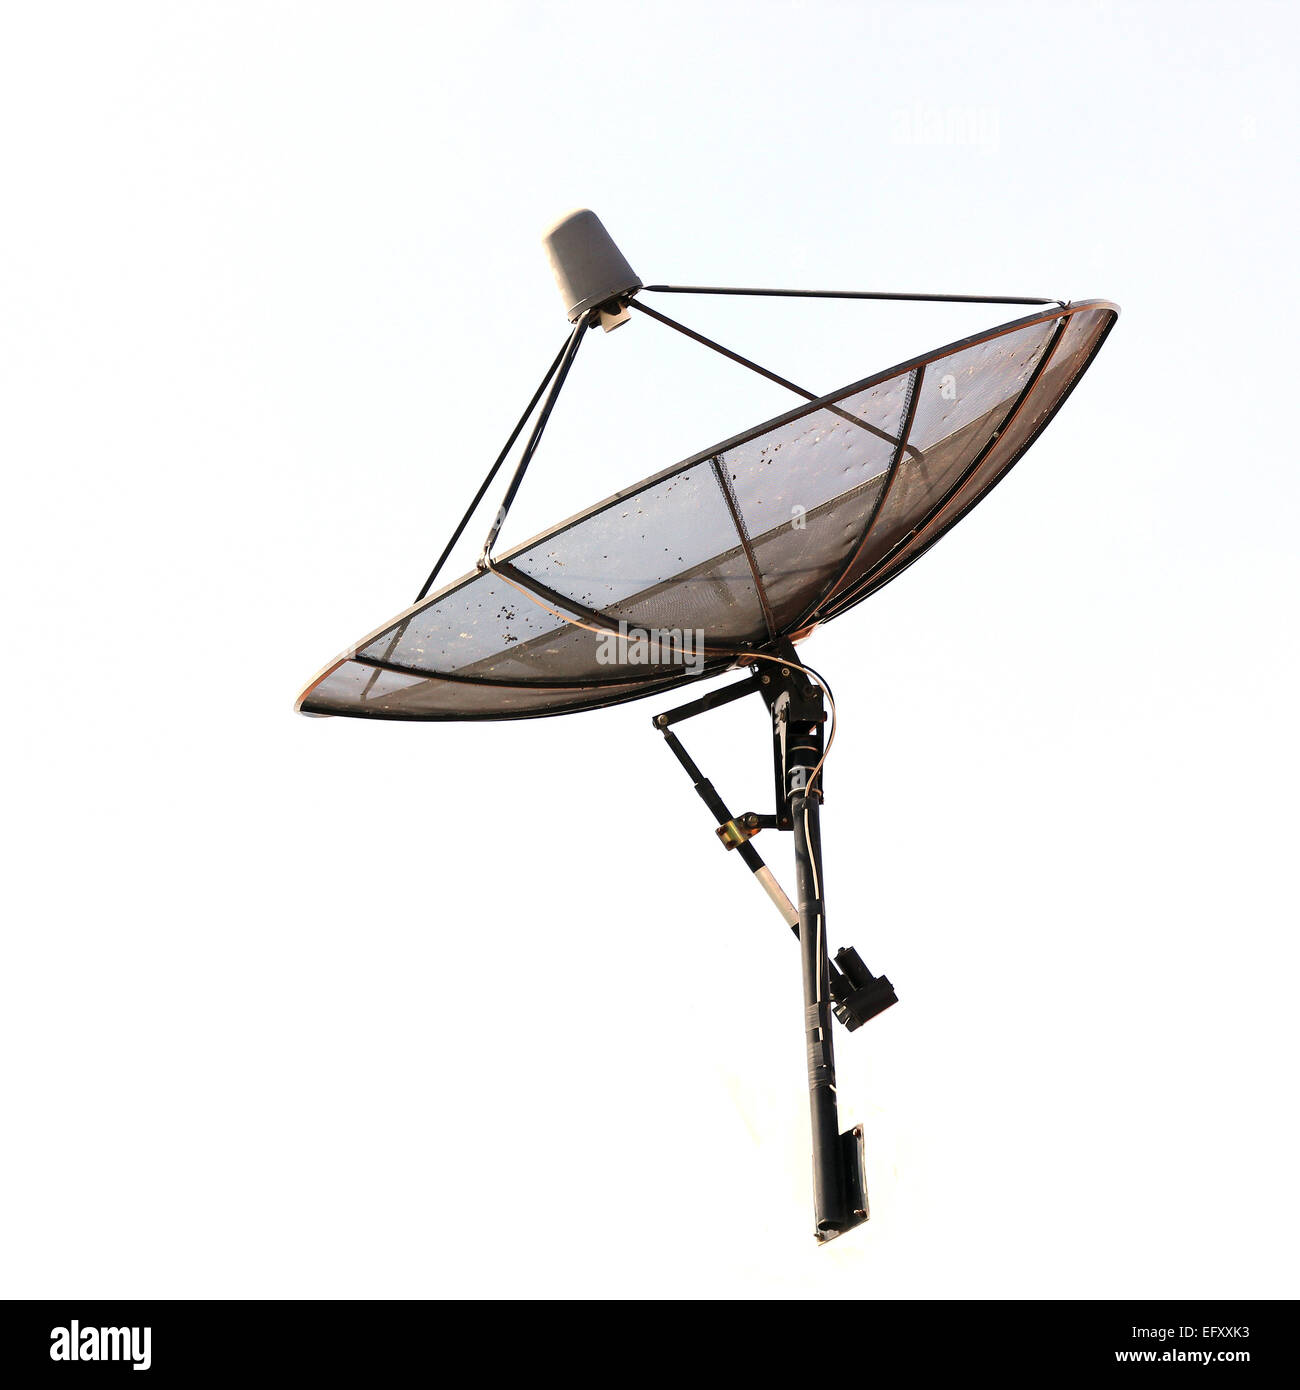 Satellite dish isolated on white background Stock Photo